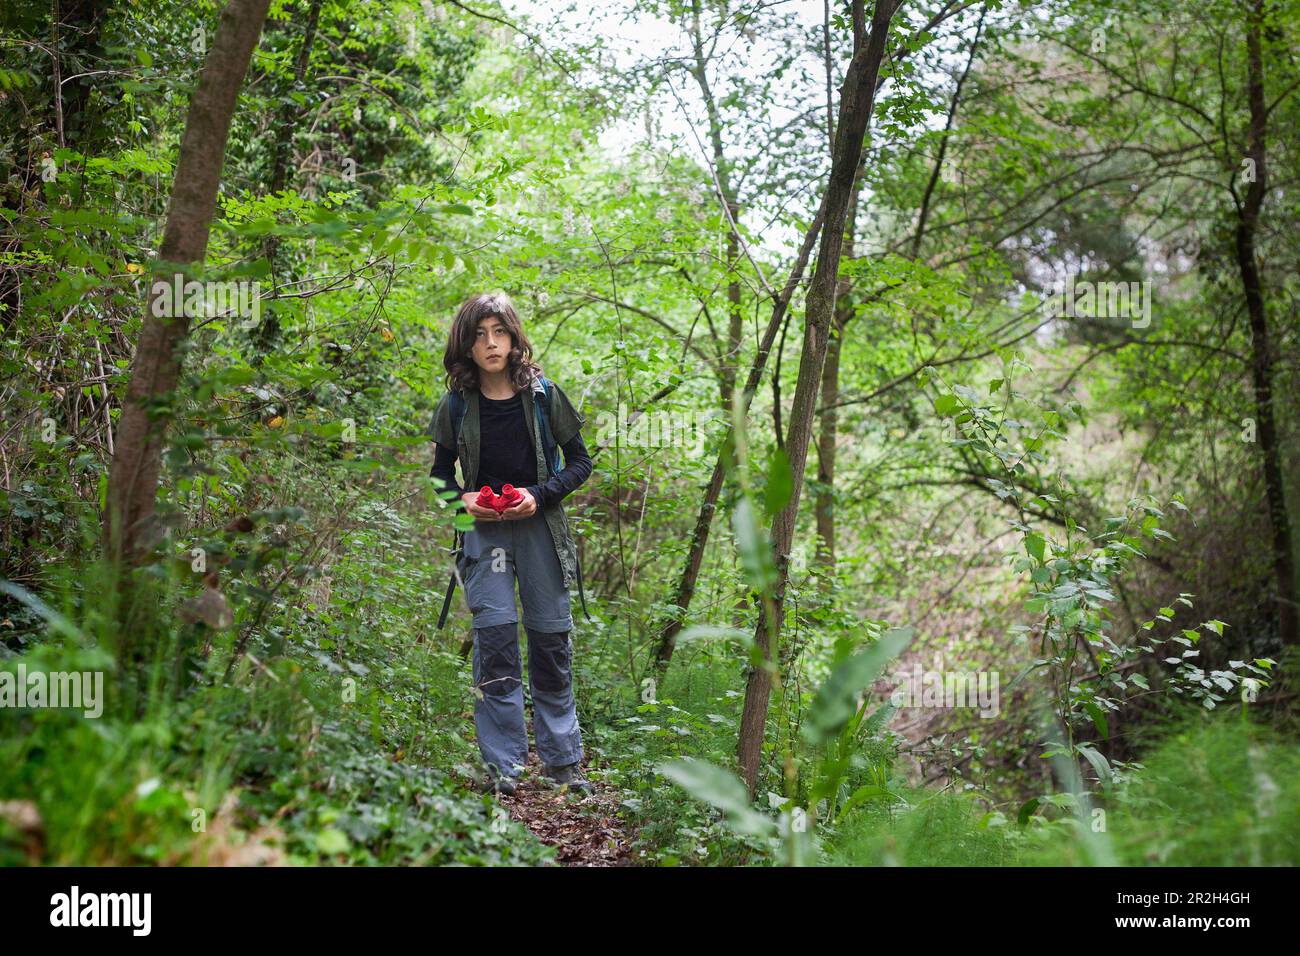 Joignez-vous à un garçon de 11 ans pendant qu'il marche et explore la forêt, équipée de ses jumelles, en explorant les merveilles de la nature. Banque D'Images